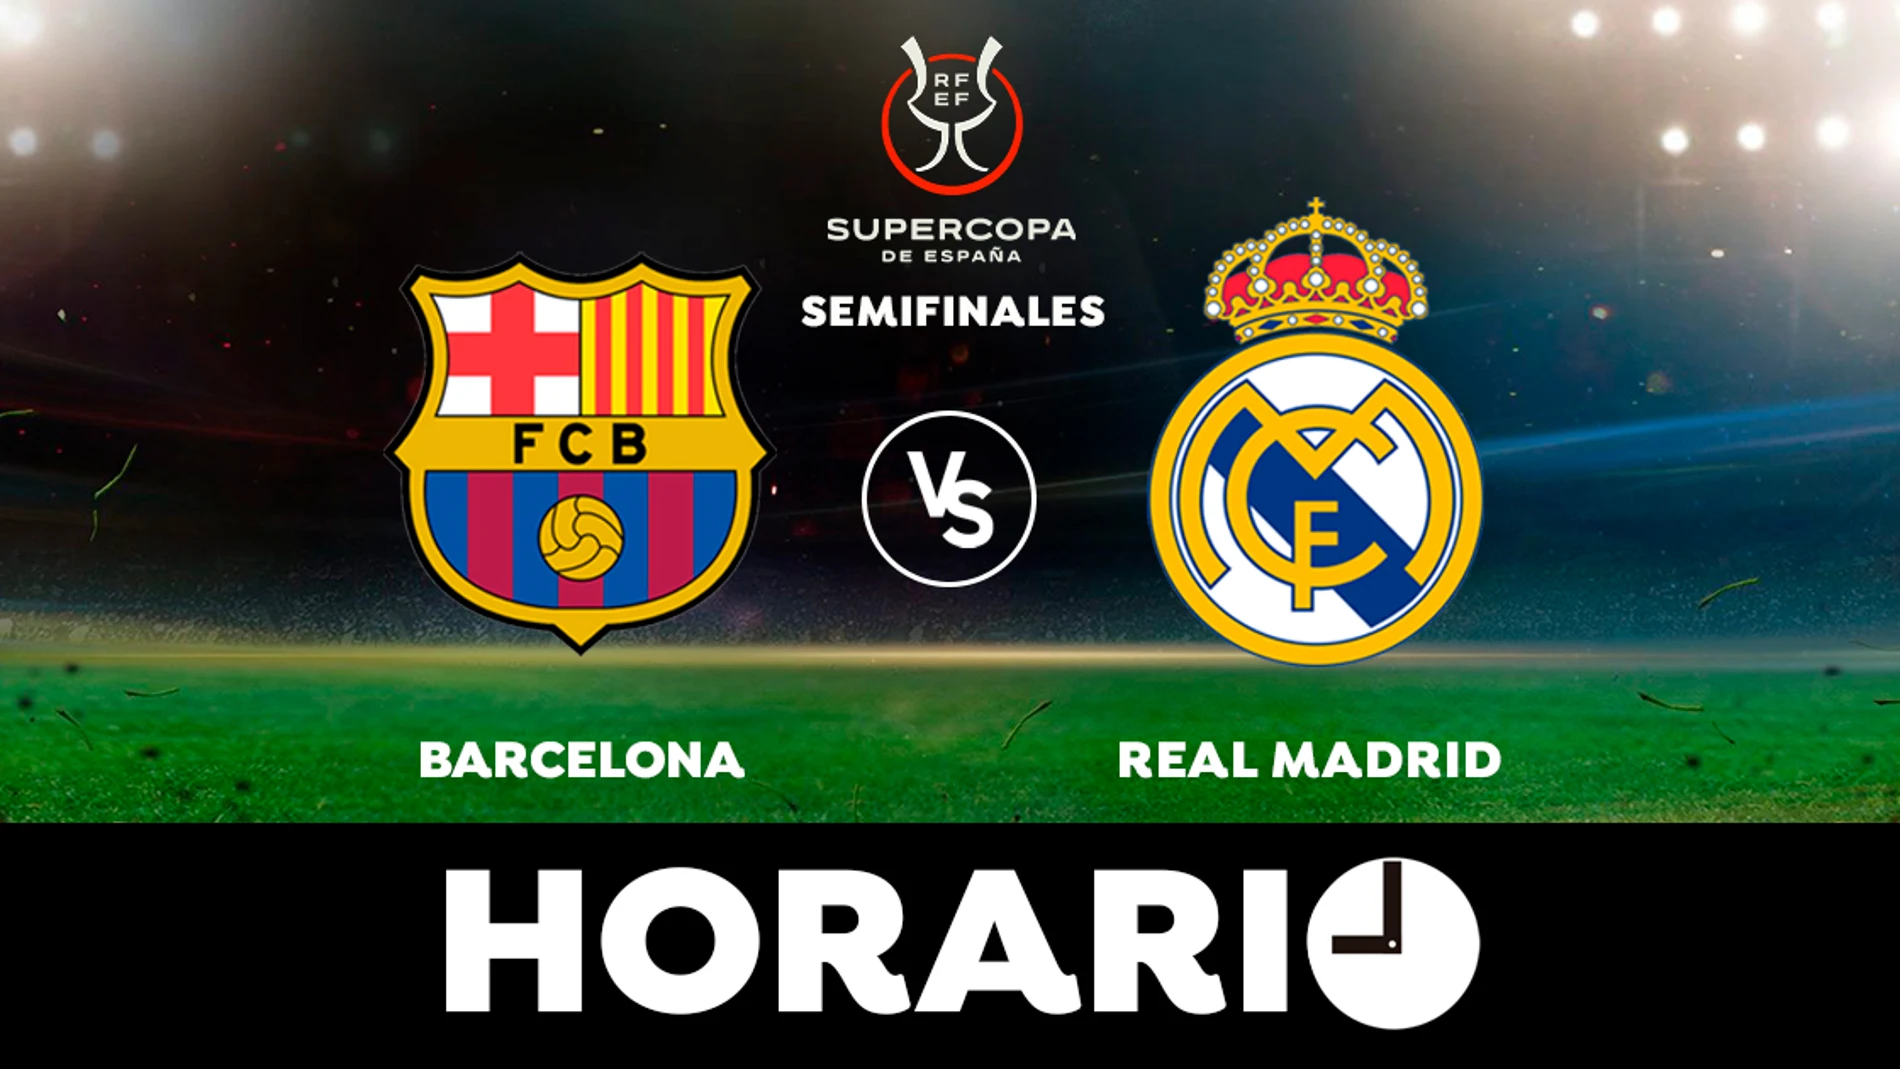 Barcelona - Real Madrid: Horario y dónde ver la semifinal de la Supercopa de España